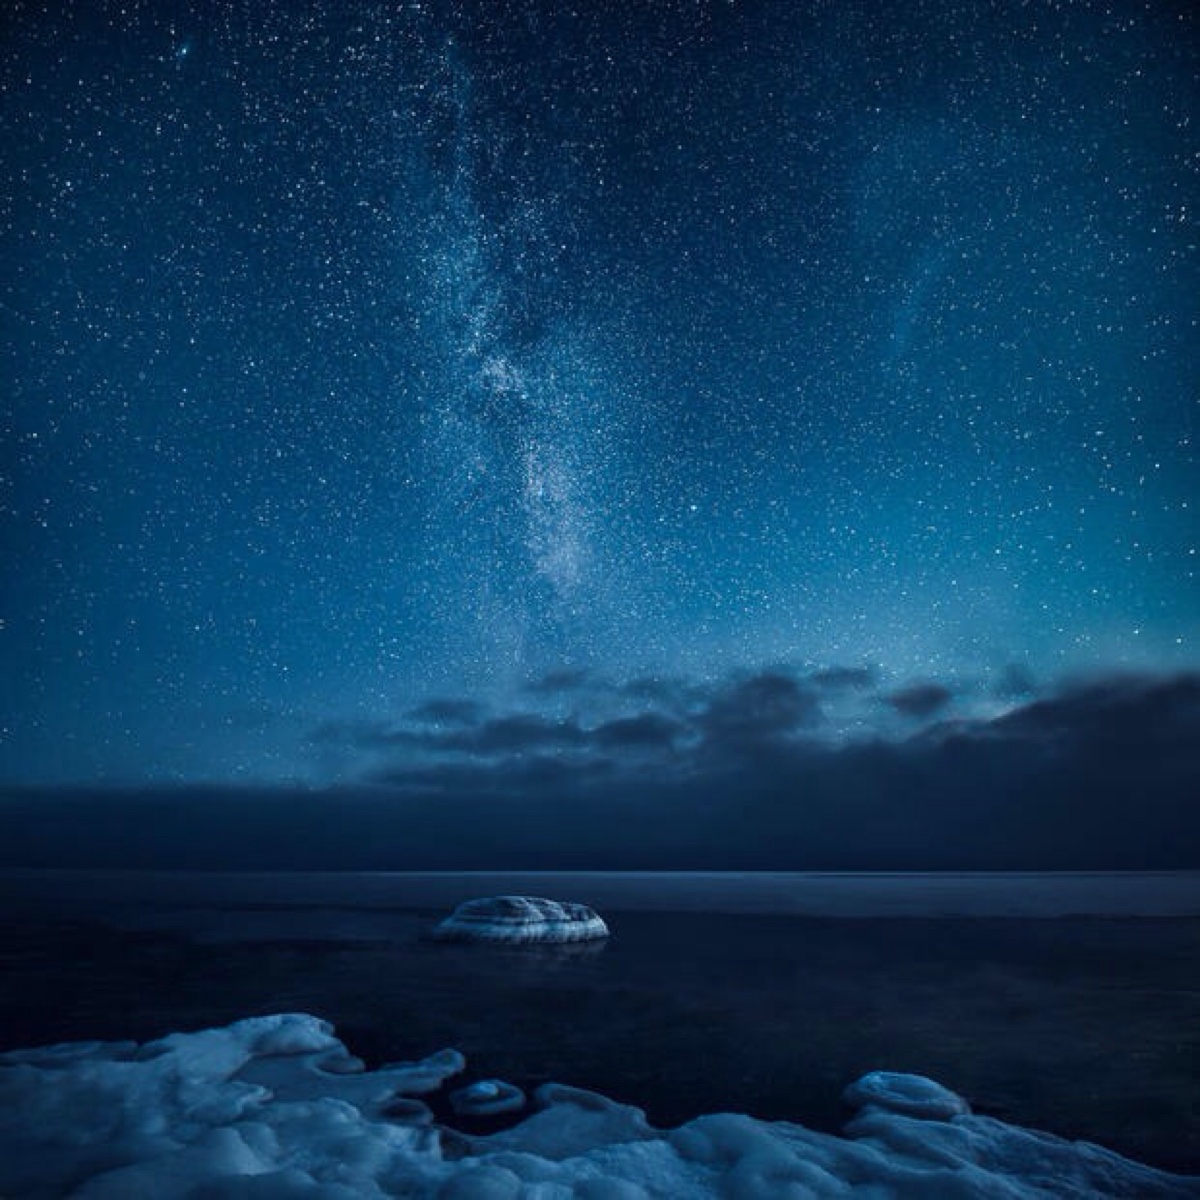 系列10:不一样的星空与冰川海洋,蓝色系冷色调,背景壁纸